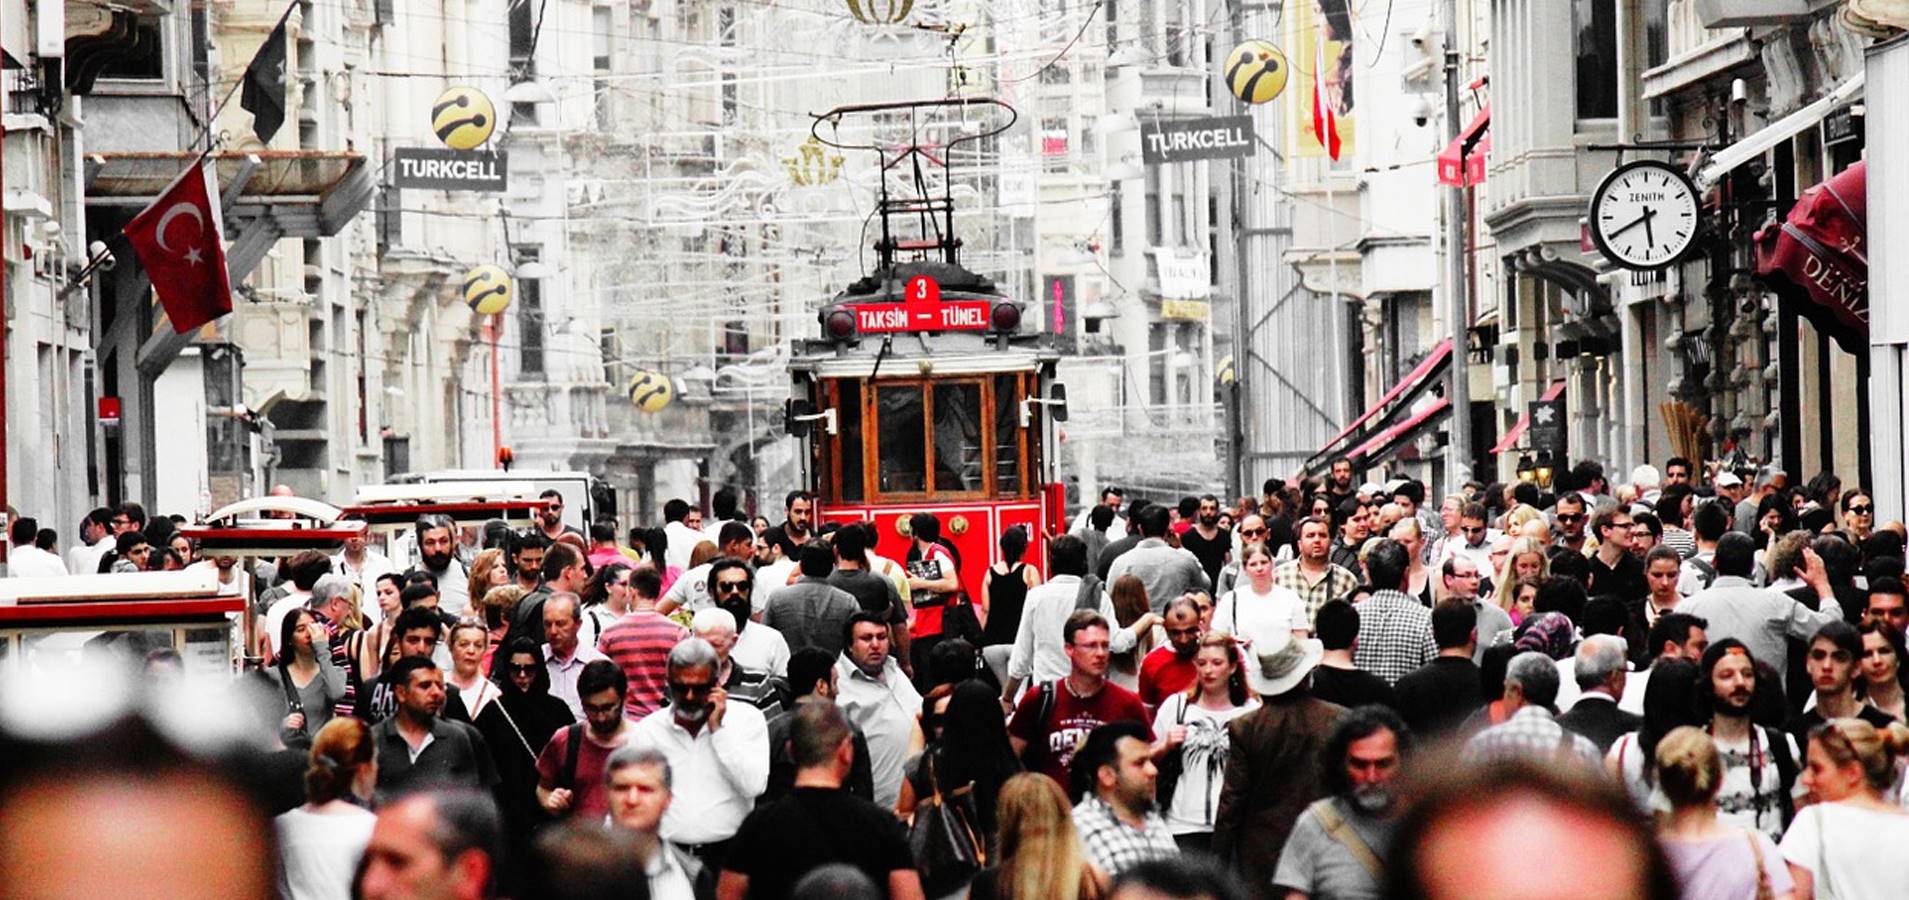 السياحة في تركيا 2021: شركة مقام للسياحة - أيقونة الجمال والسحر اسطنبول 